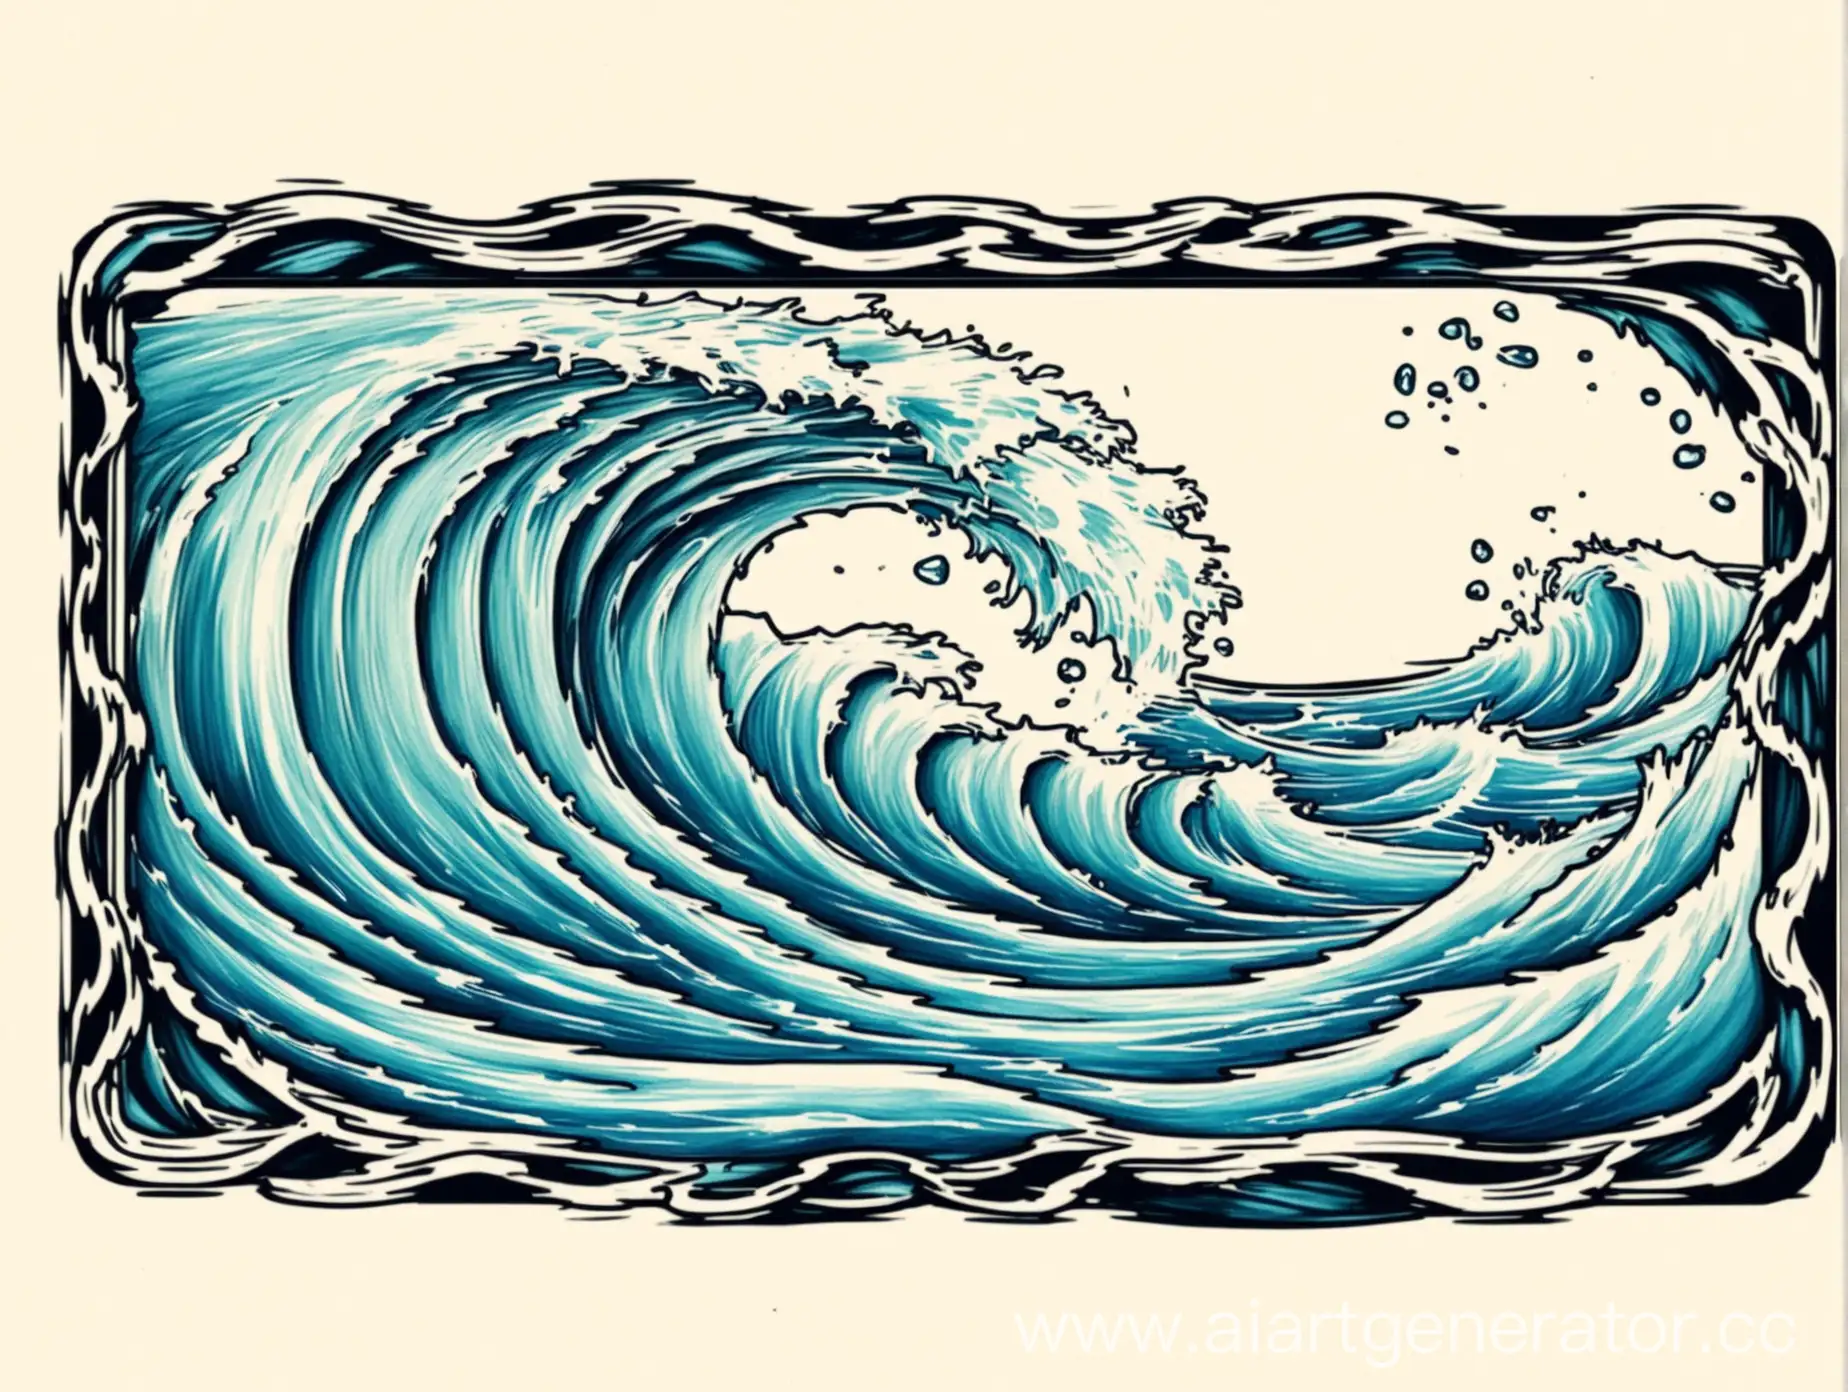  цветной эскиз для татуировки вода и волны в узком горизонтальном прямоугольнике